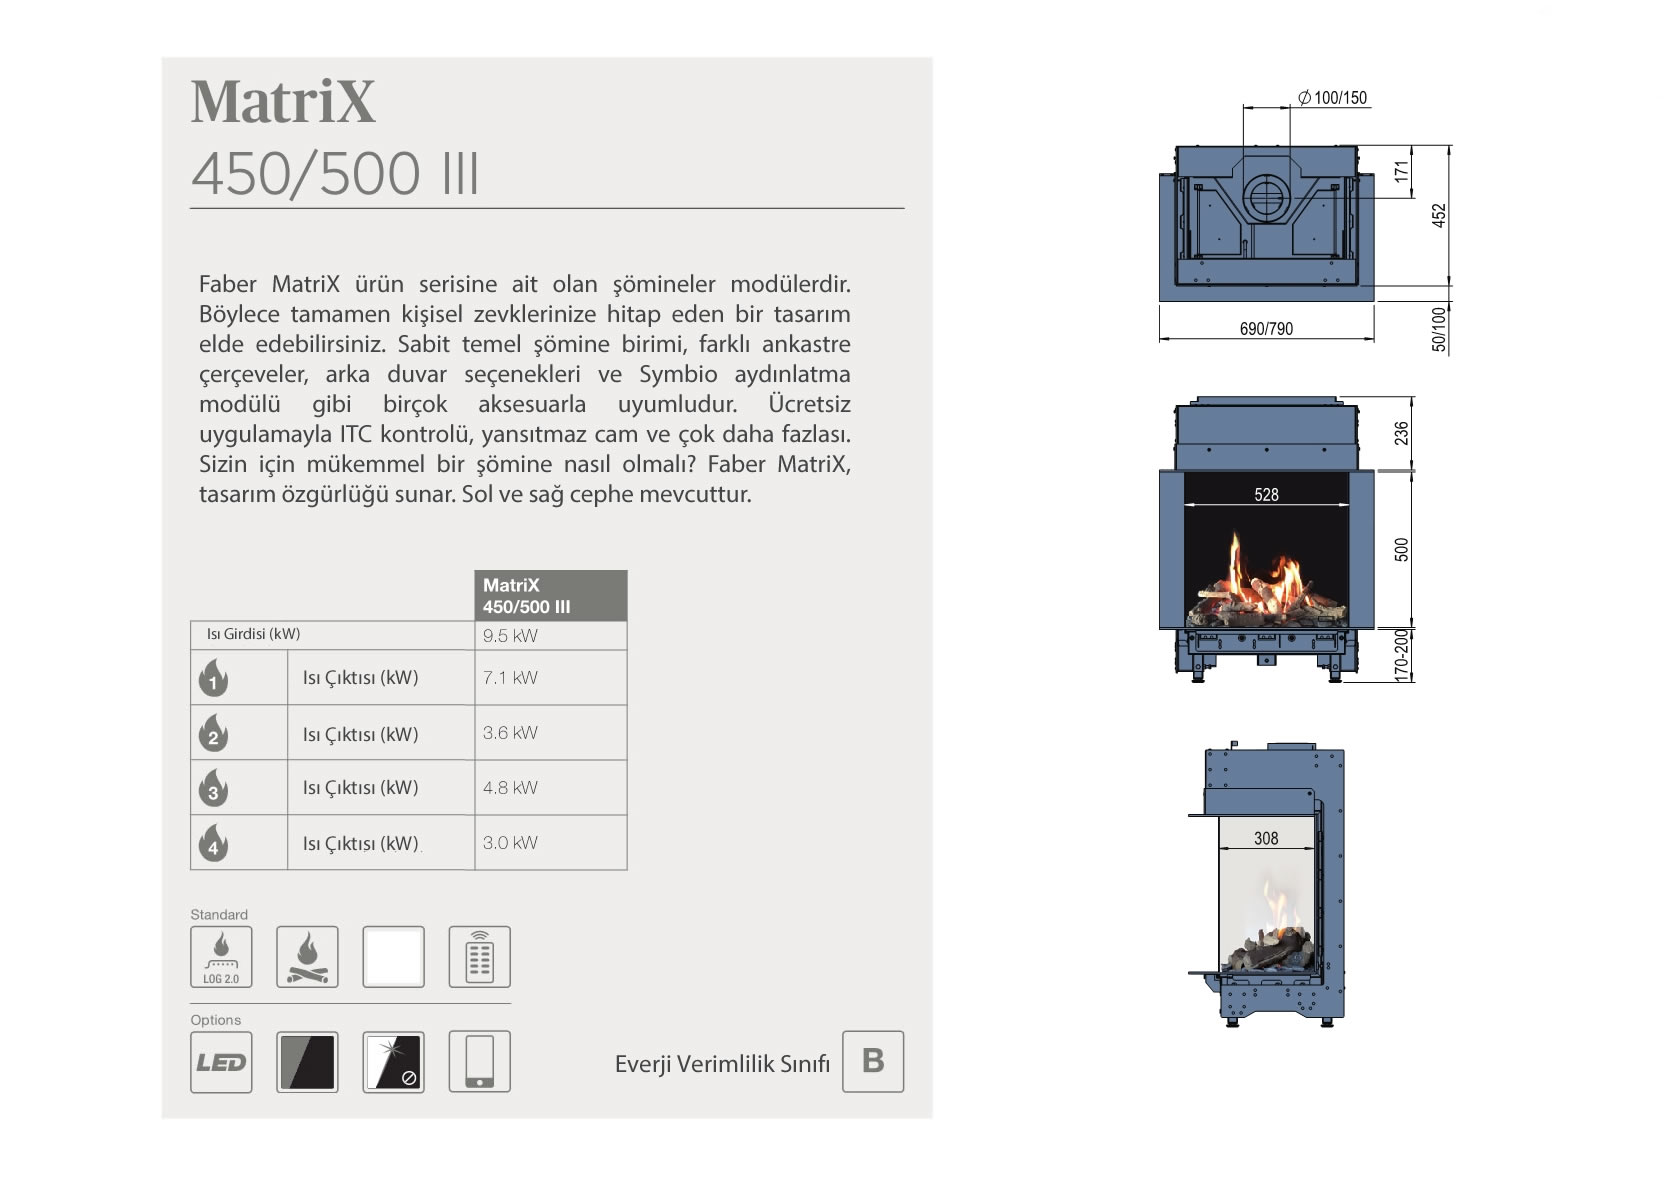 MATRX 450/ 500 III